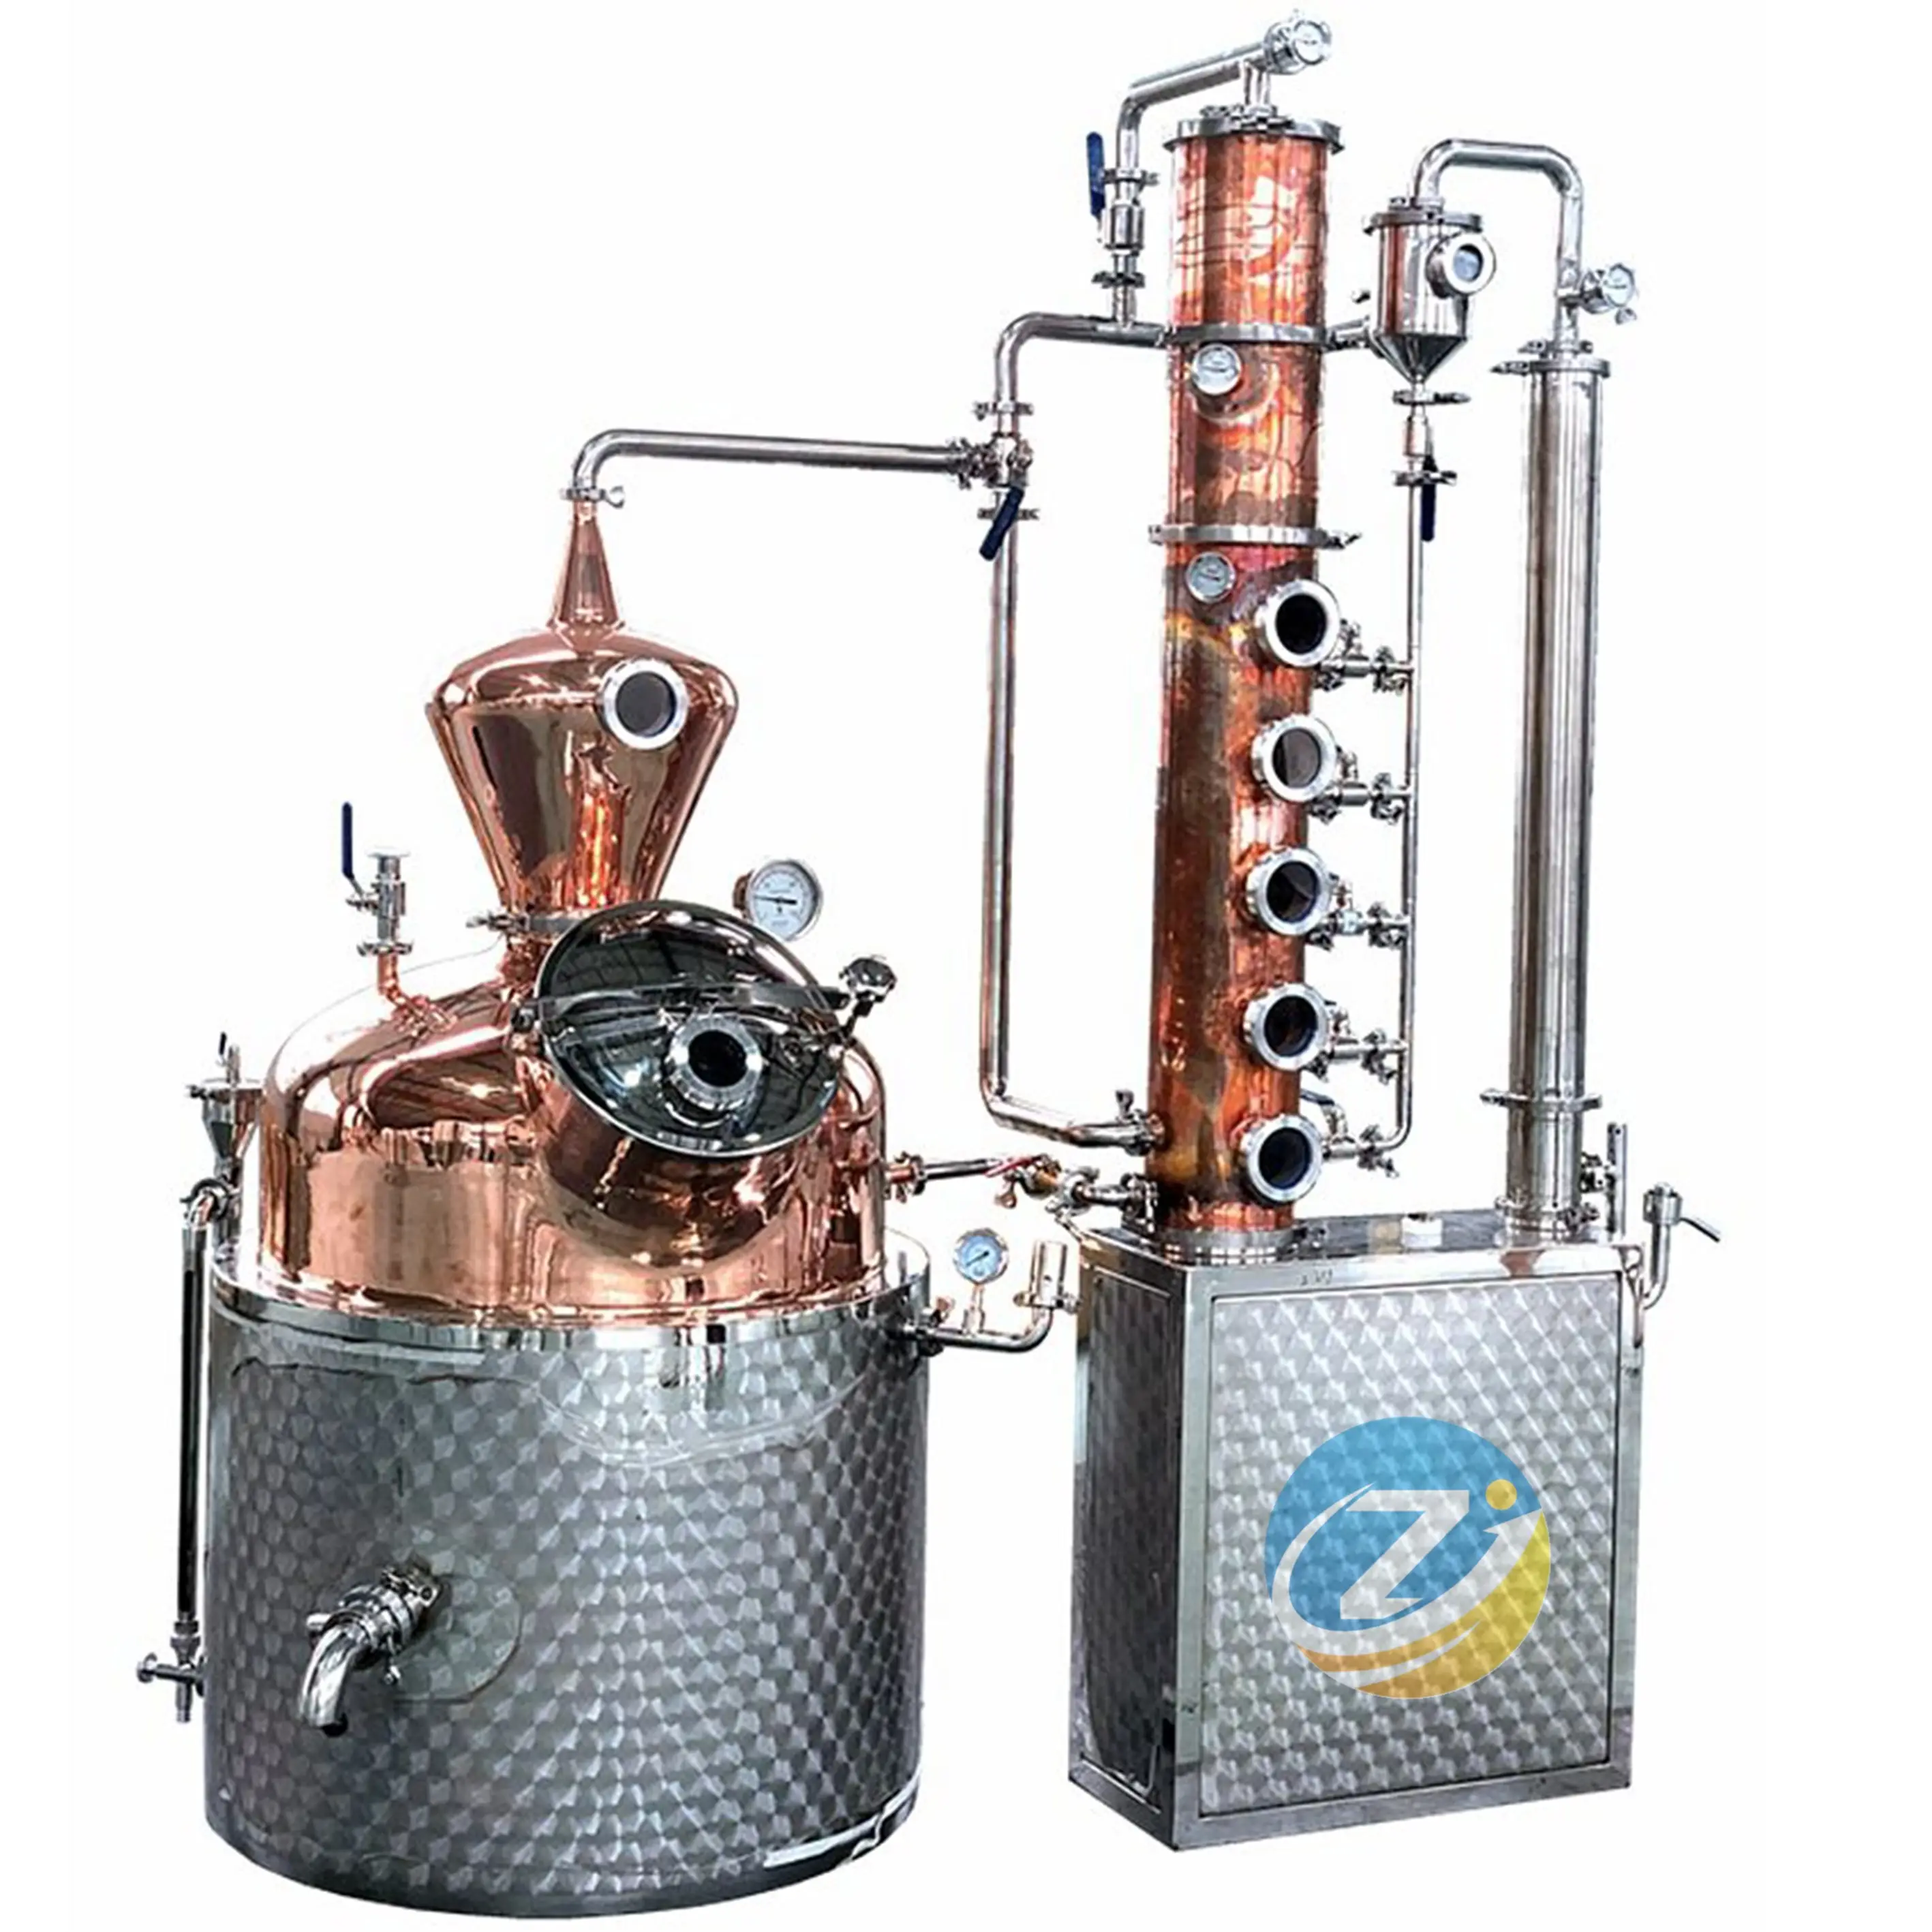 ZJ Home Destillation Equipment 200L 300L Kupfer destillation noch mit Pumpen motor Neue Alkohol brenner Getränke verarbeitung